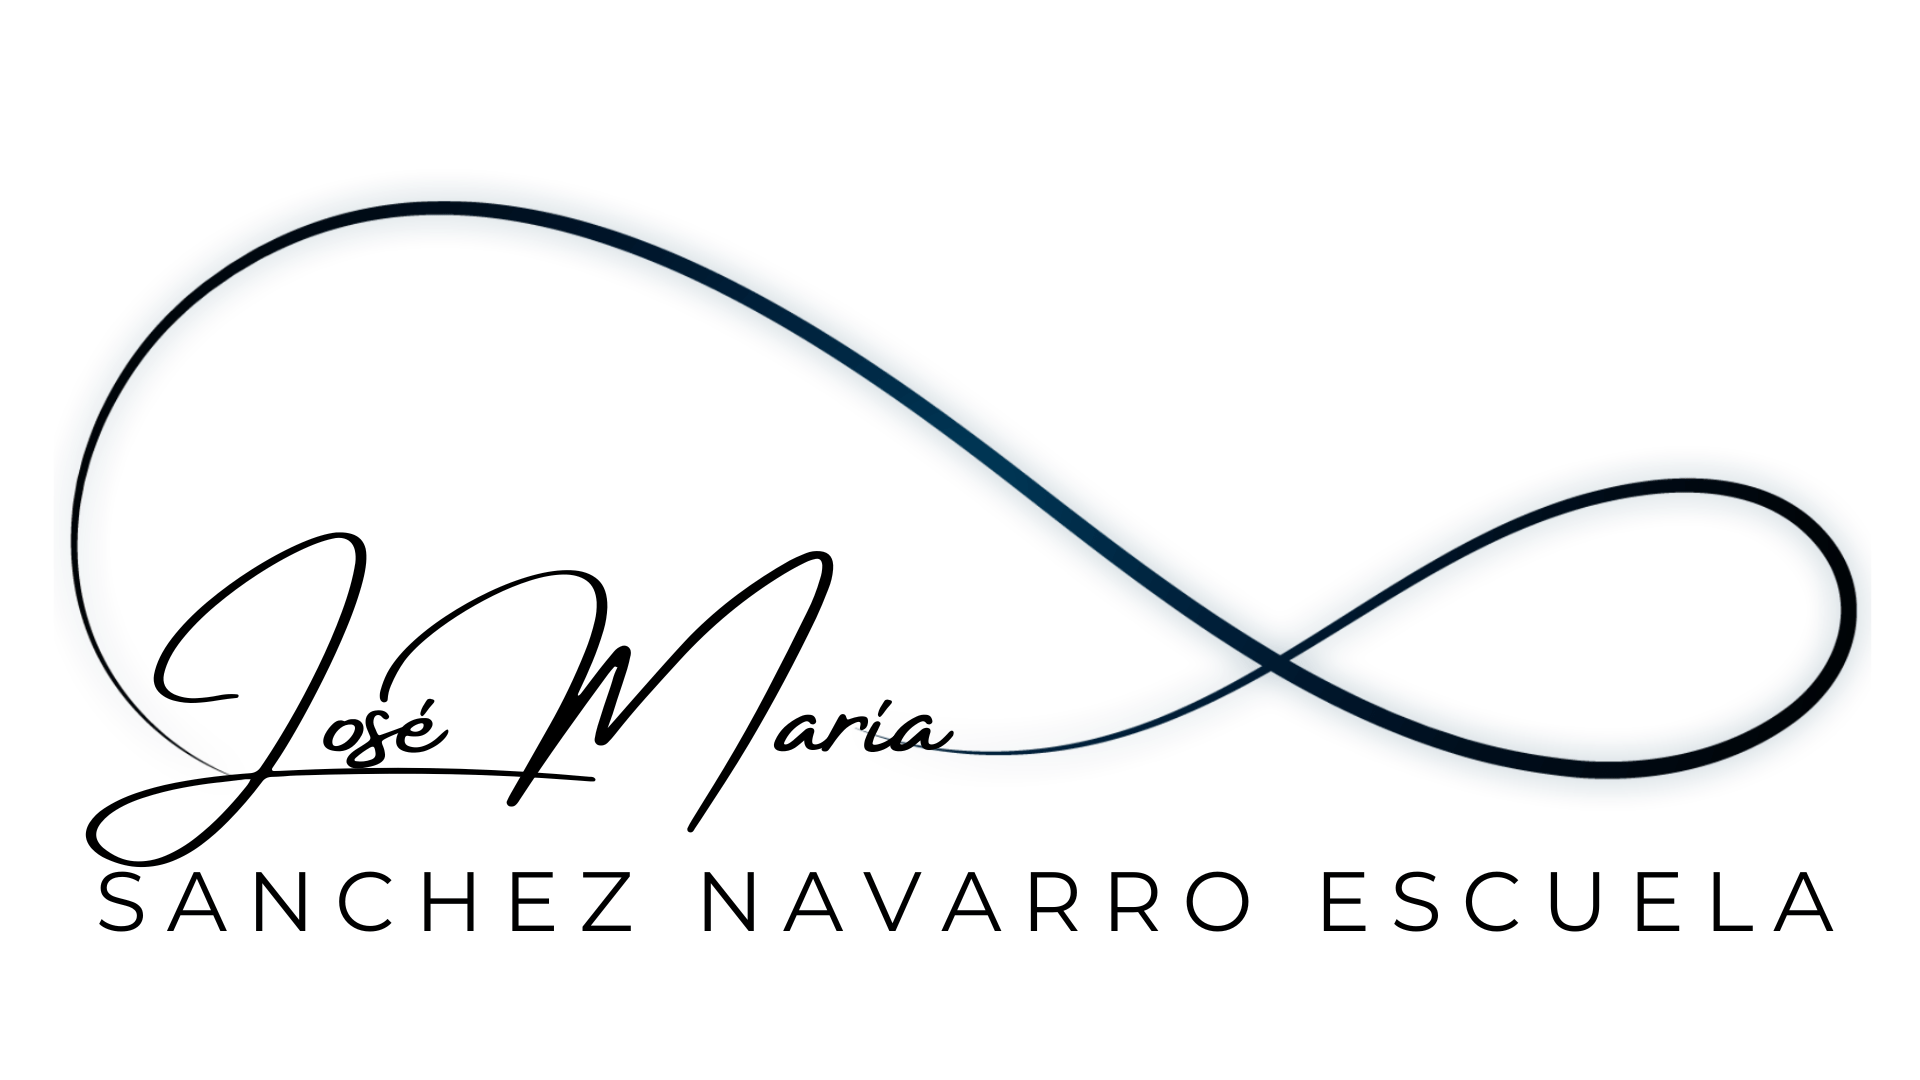 Jose-Maria-Sanchez-Navarro-Escuela